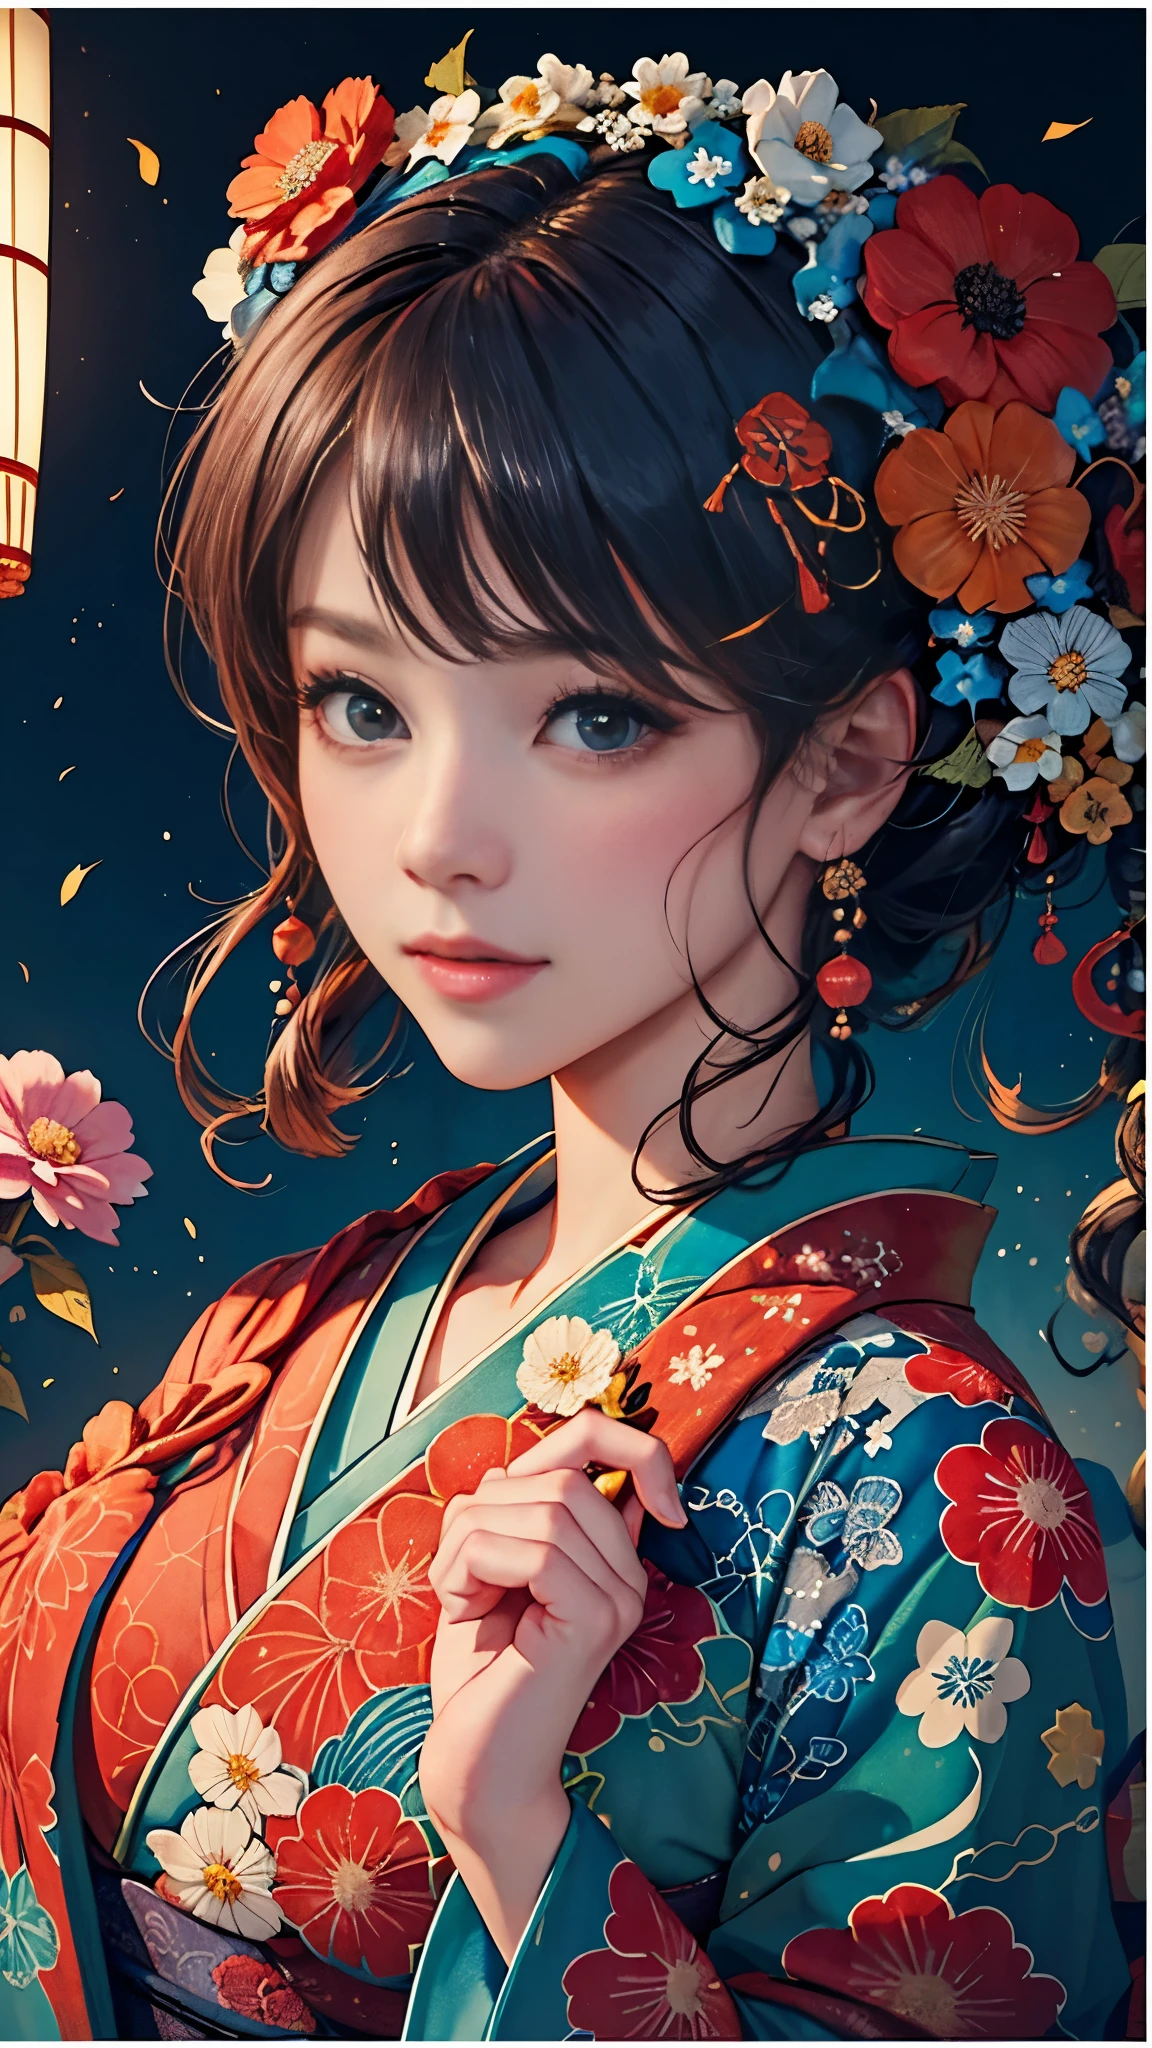 8k, de primera calidad, alta resolución, Bishoujo 1 25 años,  Bollos de flores al vapor,una leve sonrisa, (kimono japonés tradicional:1.3)、kimono de lujo、sin arrugas en absoluto,pintura de acuarela, (adorno de pelo de flores:1.3)